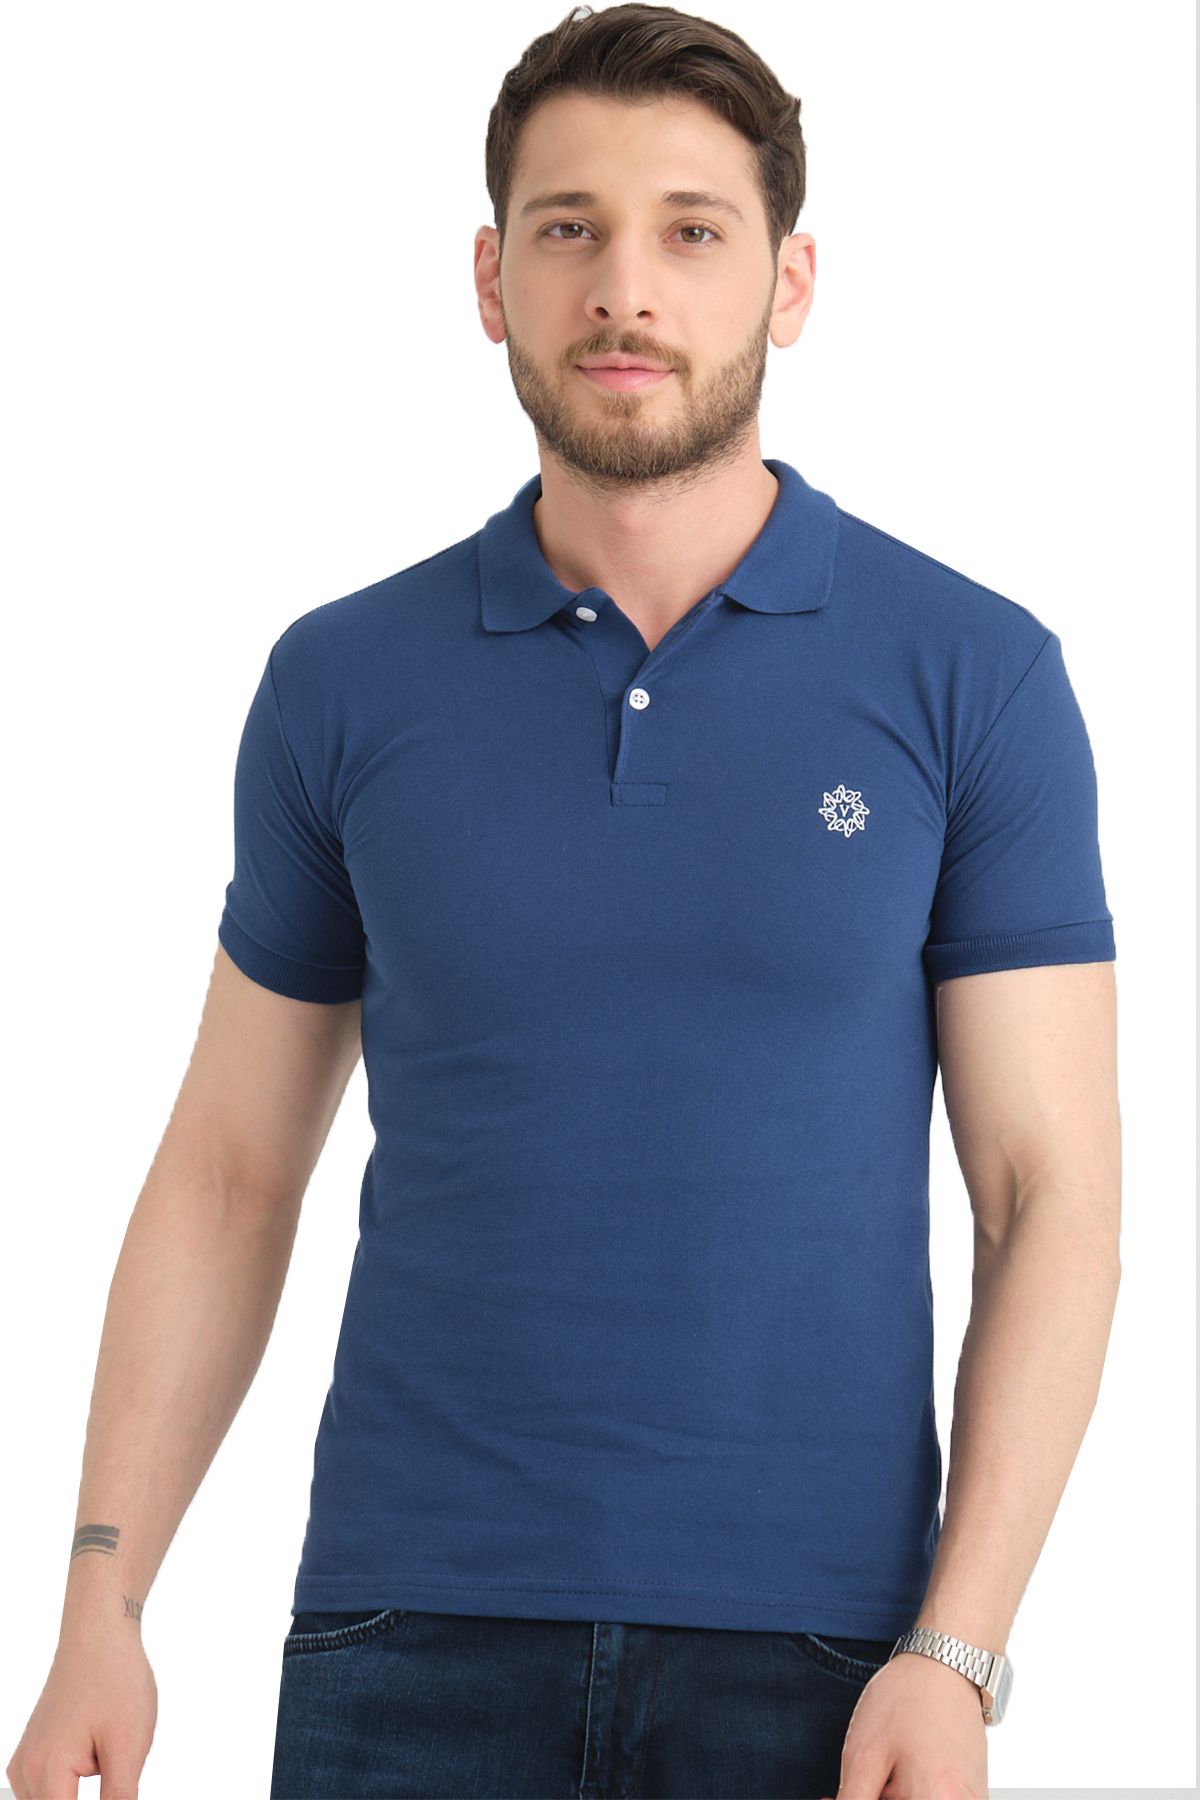 Varetta Erkek Koyu Mavi Polo Yaka Biyeli Yazlık Pamuklu Kısa Kollu T shirt